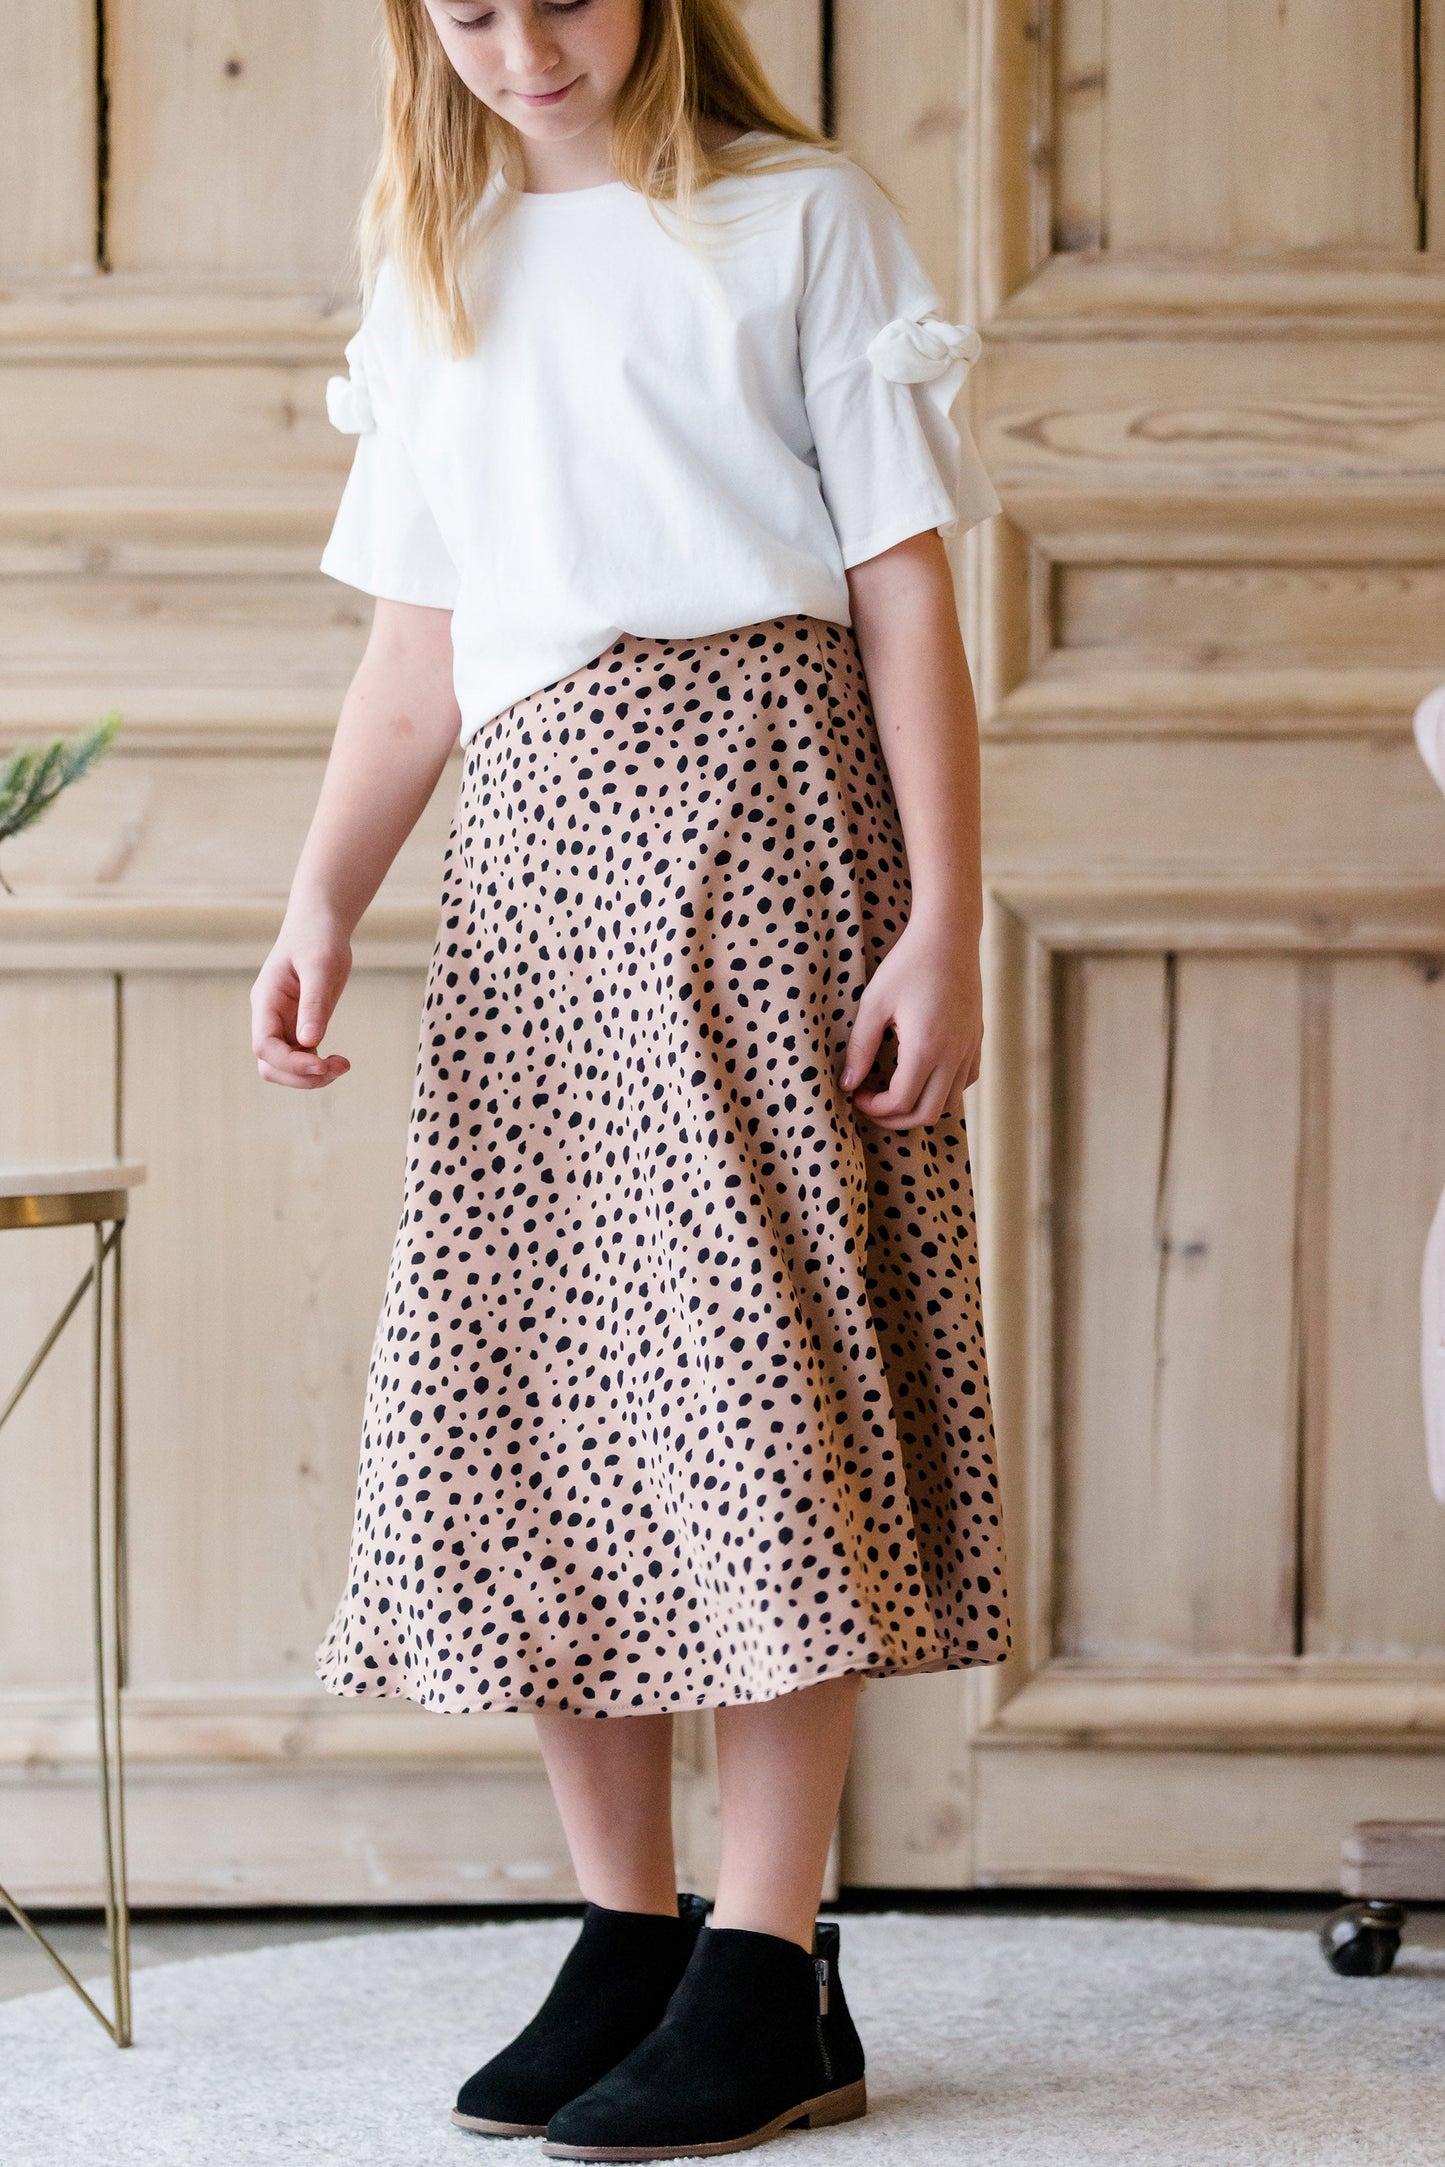 Cheetah High Waist Flare Skirt - FINAL SALE Skirts